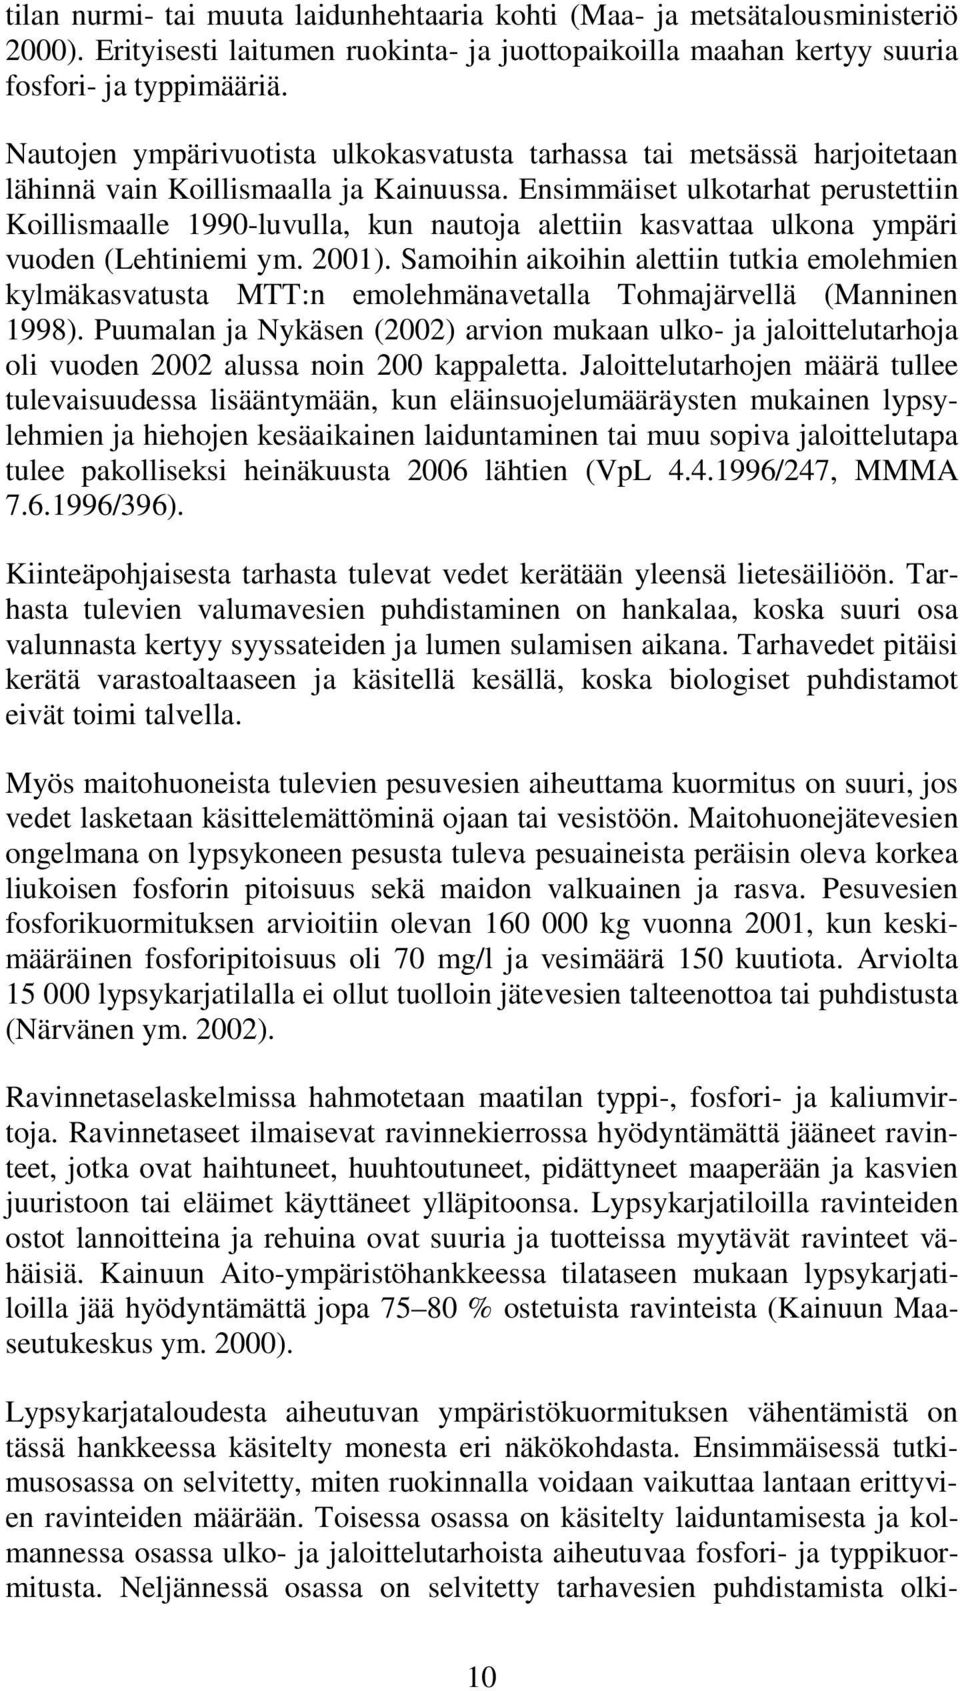 Ensimmäiset ulkotarhat perustettiin Koillismaalle 1990-luvulla, kun nautoja alettiin kasvattaa ulkona ympäri vuoden (Lehtiniemi ym. 2001).